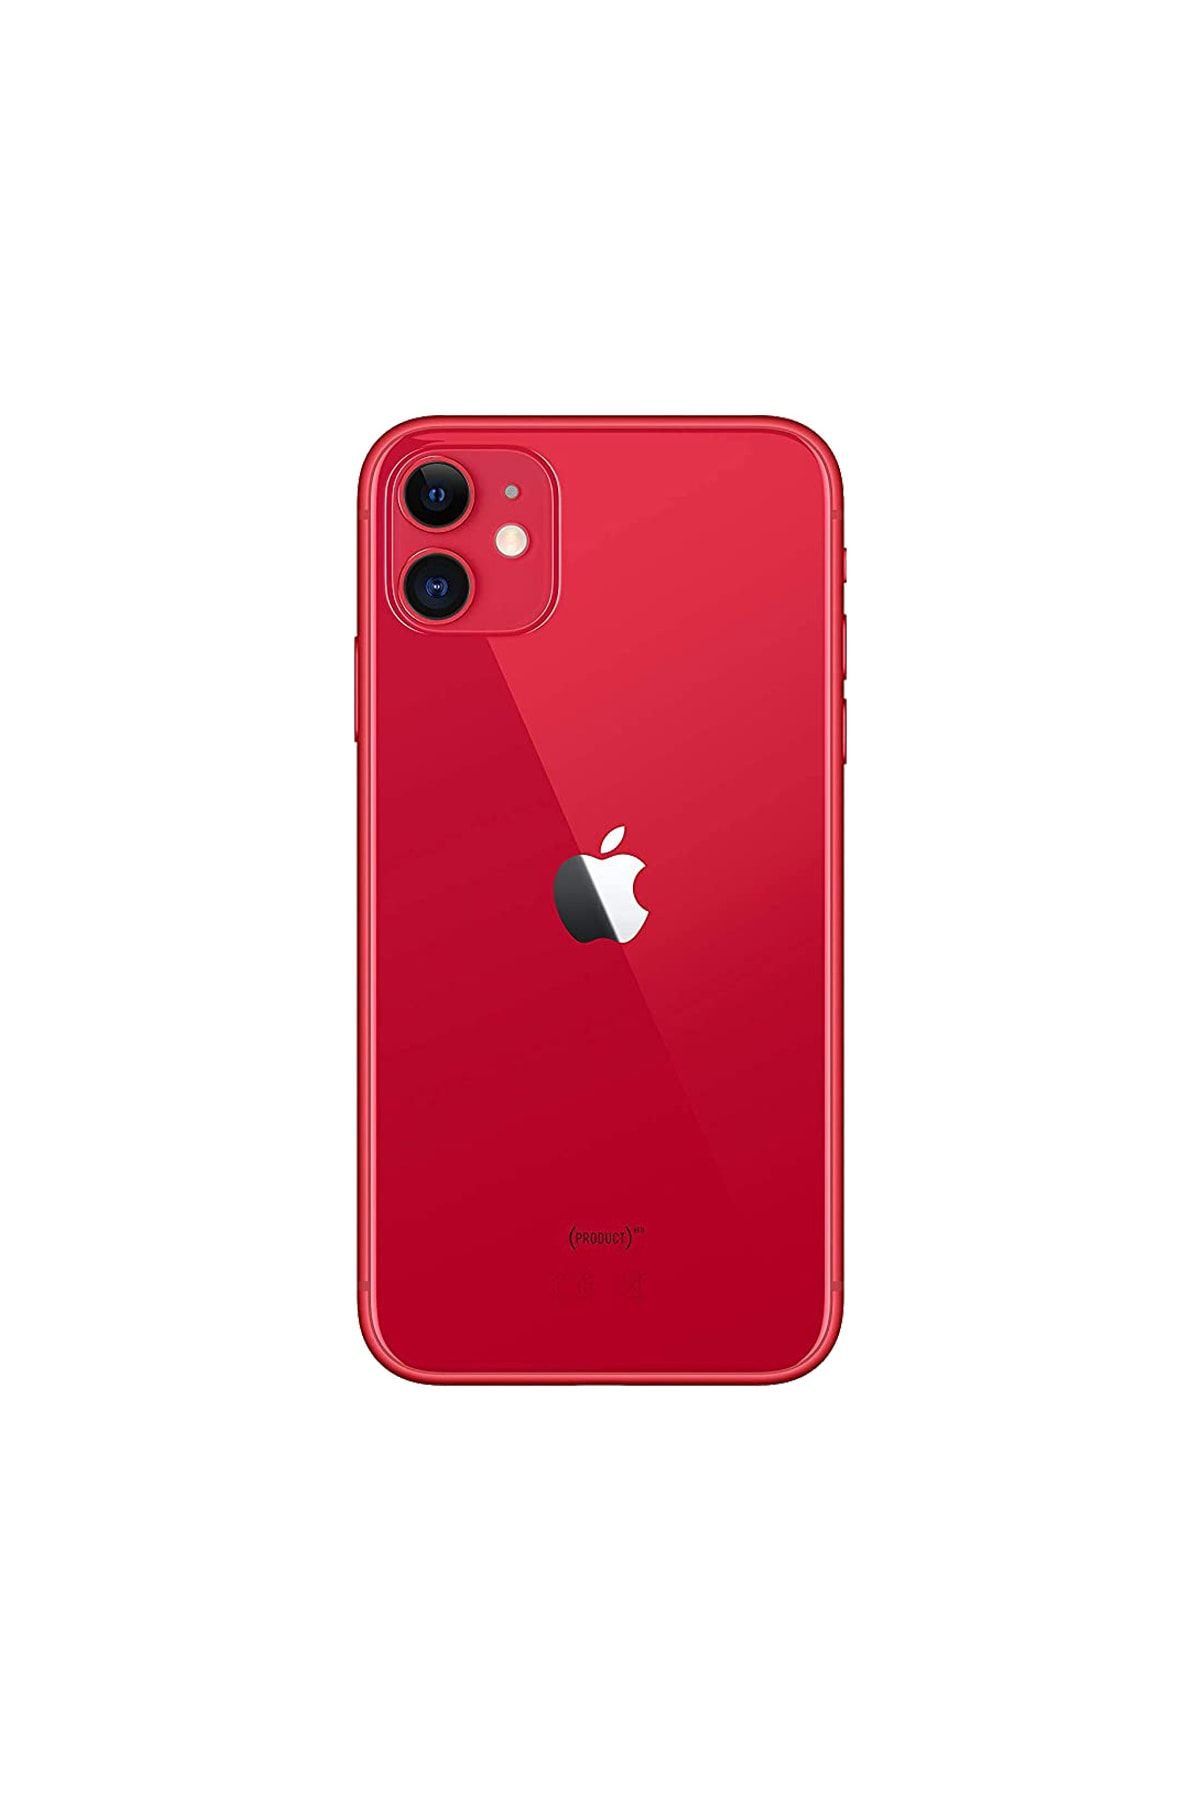 Apple Yenilenmiş iPhone 11 64 GB Kırmızı Cep Telefonu (12 Ay Garantili) - A Kalite